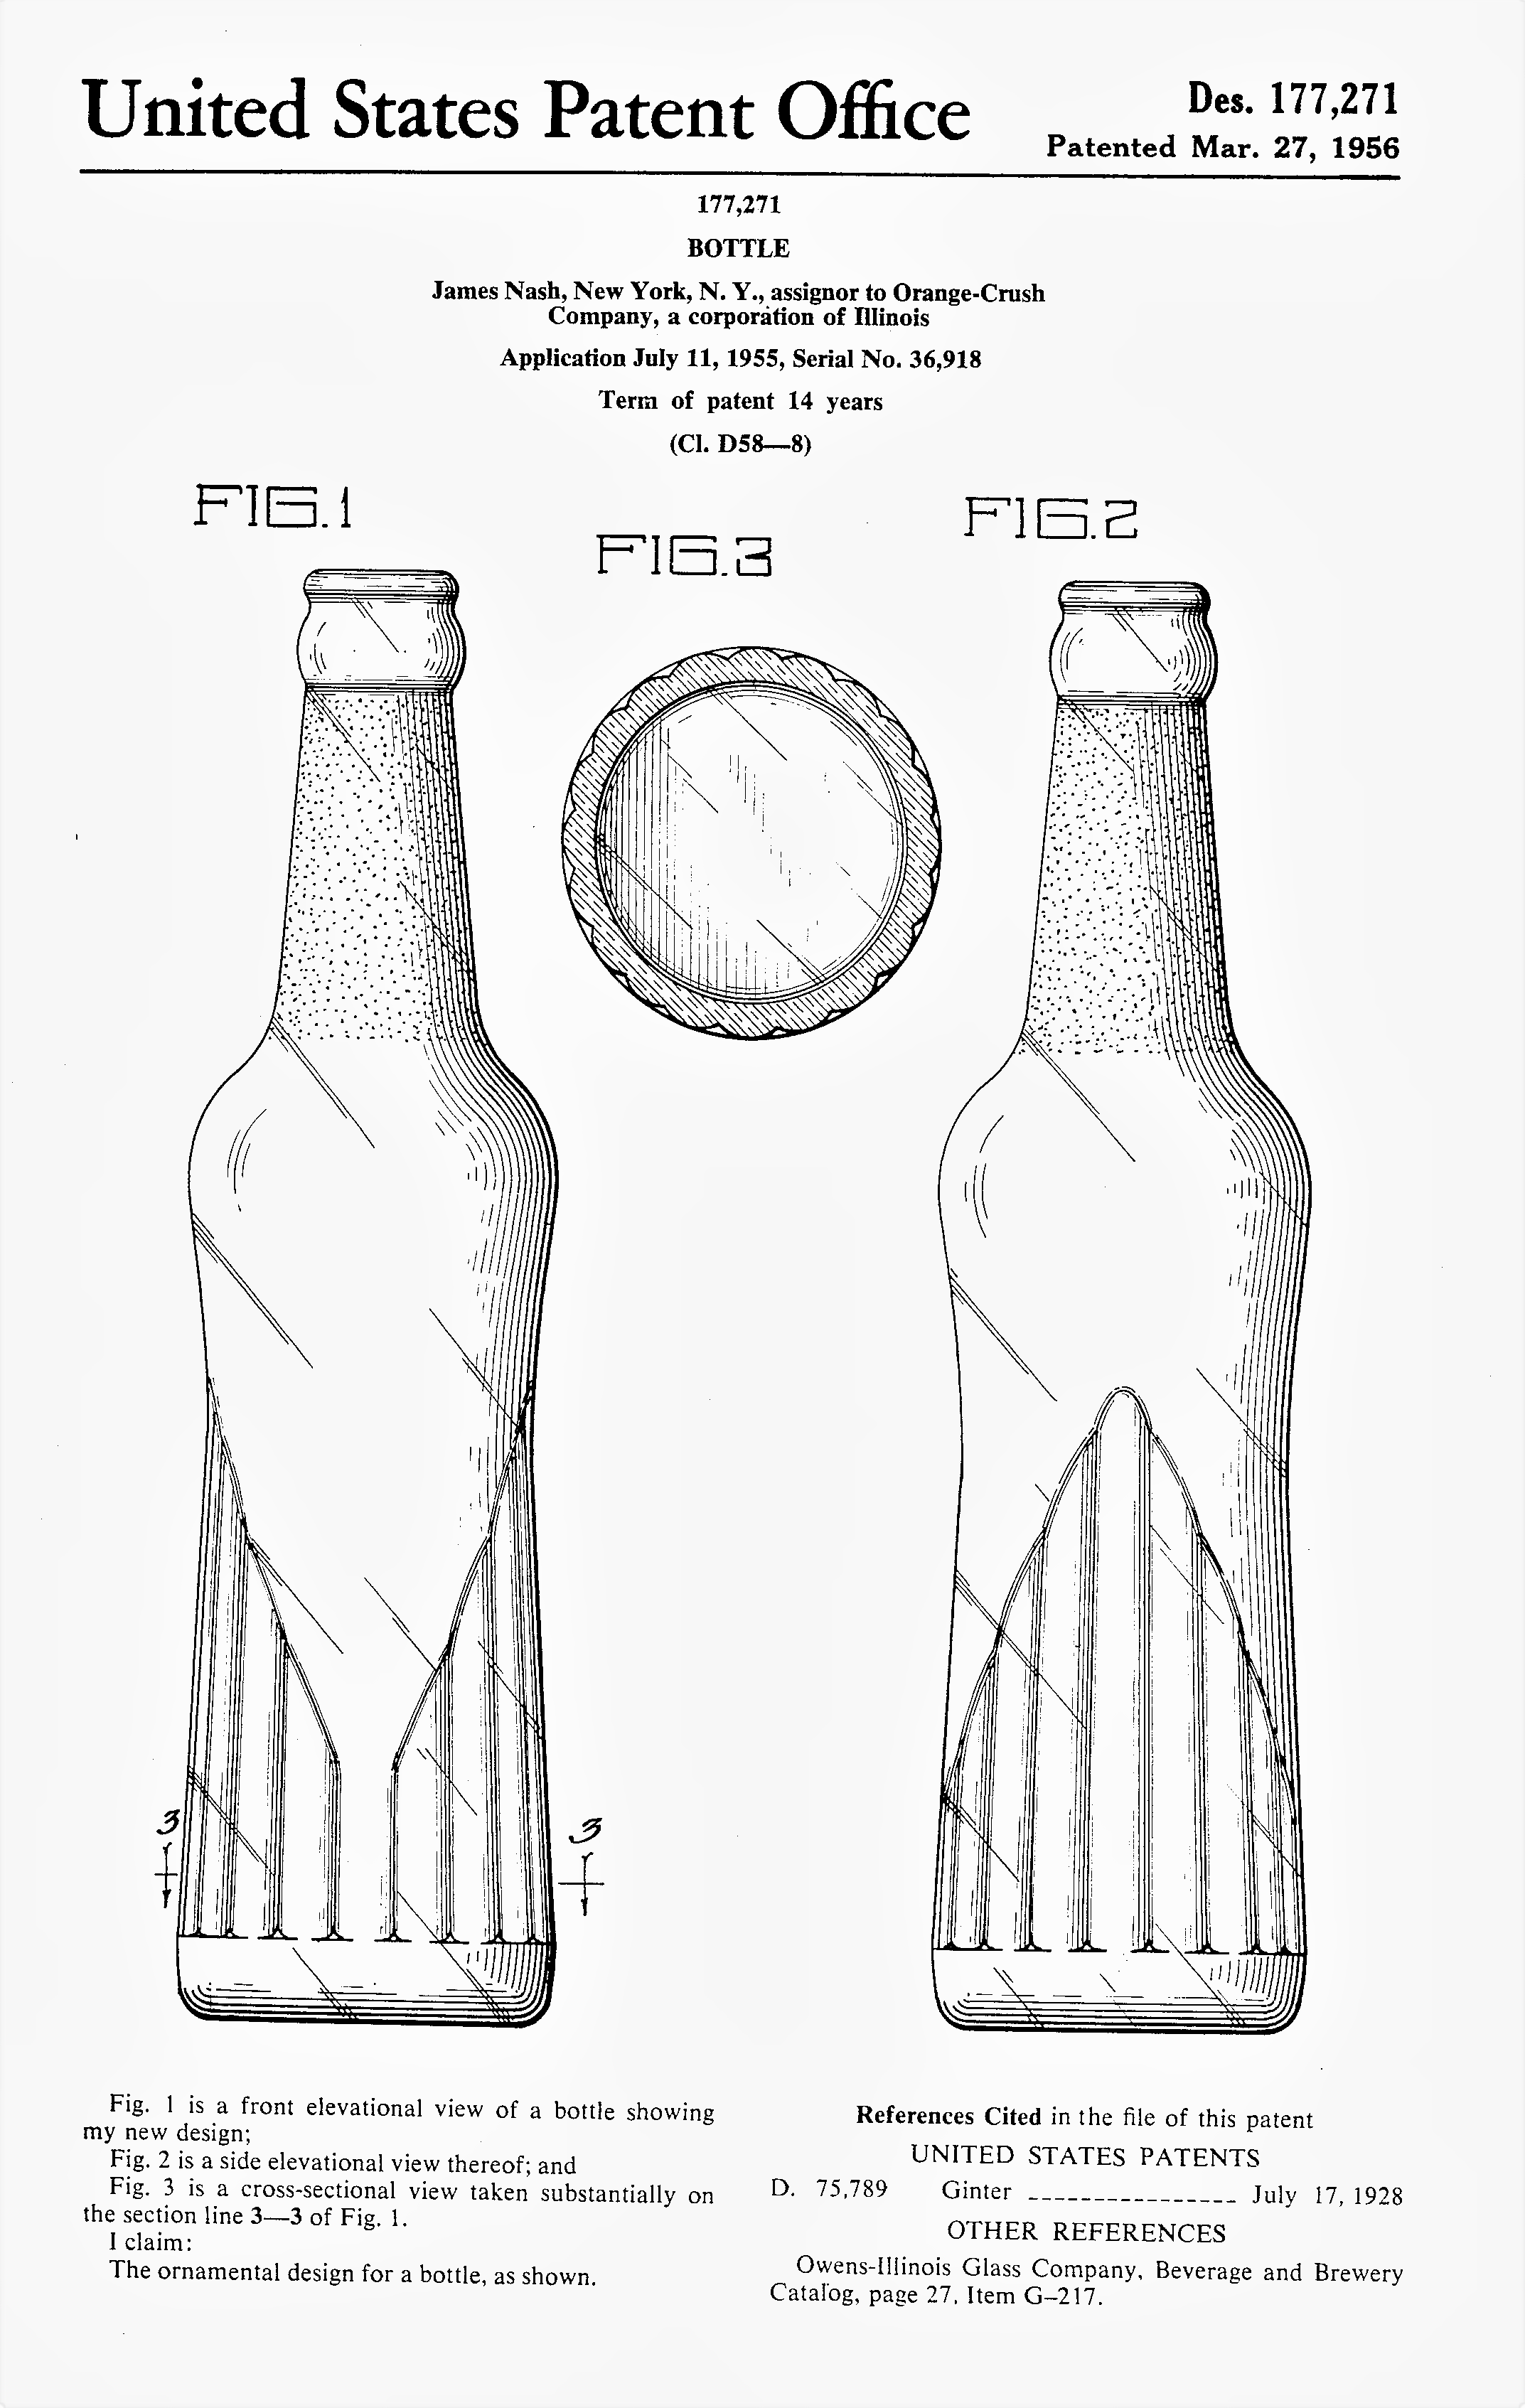 Orange Crush Patent 1955-1956 James Nash.png